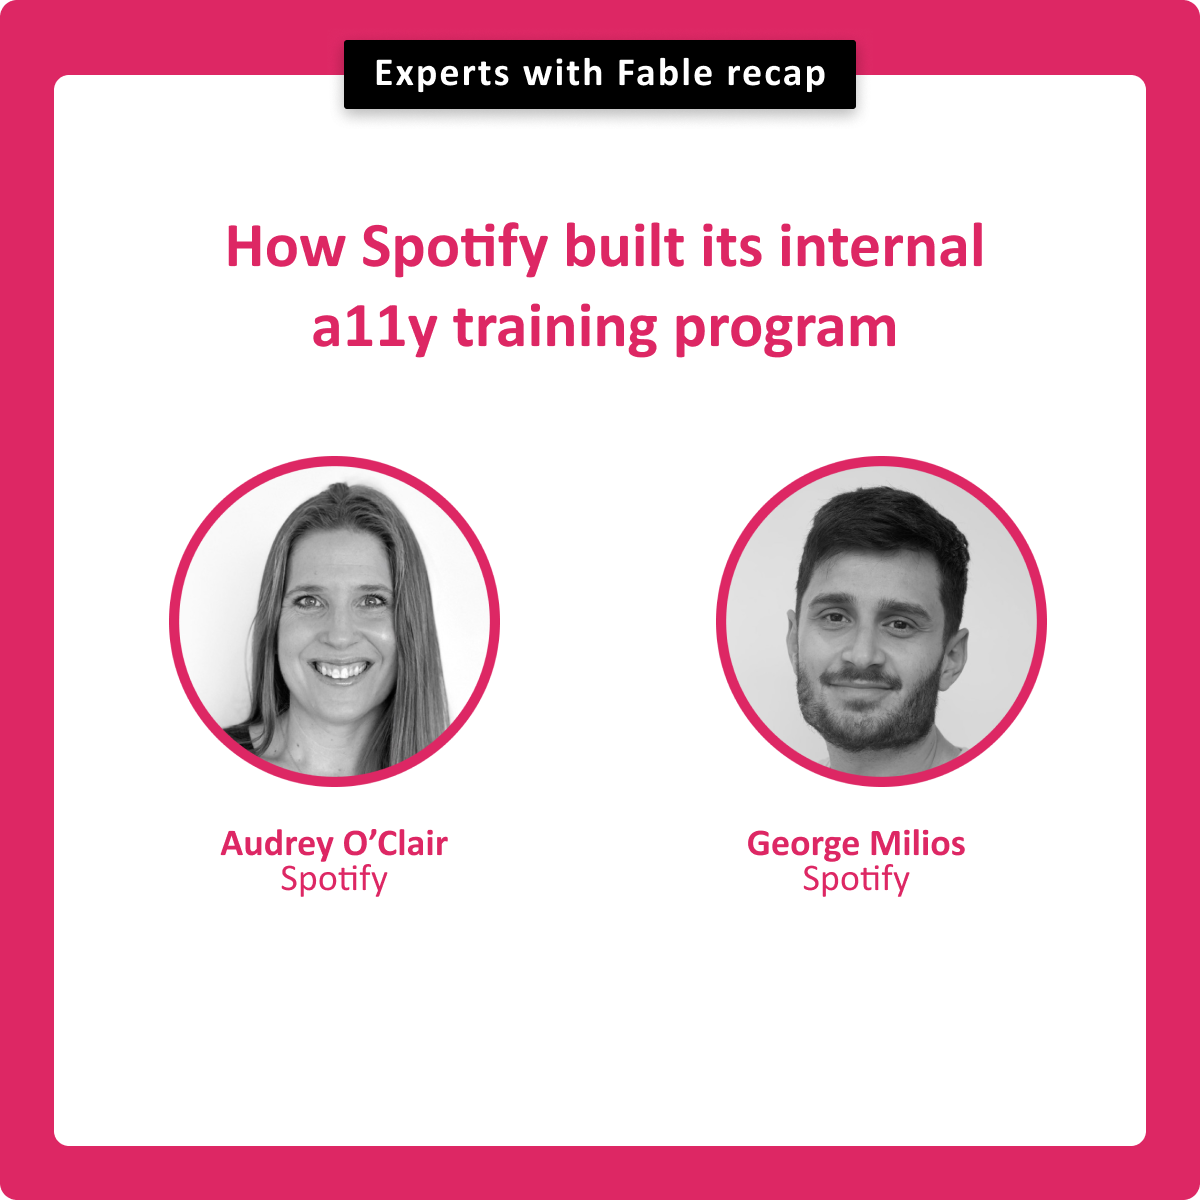 How Spotify built its internal a11y training program. Audrey O'Clair, George Milios.